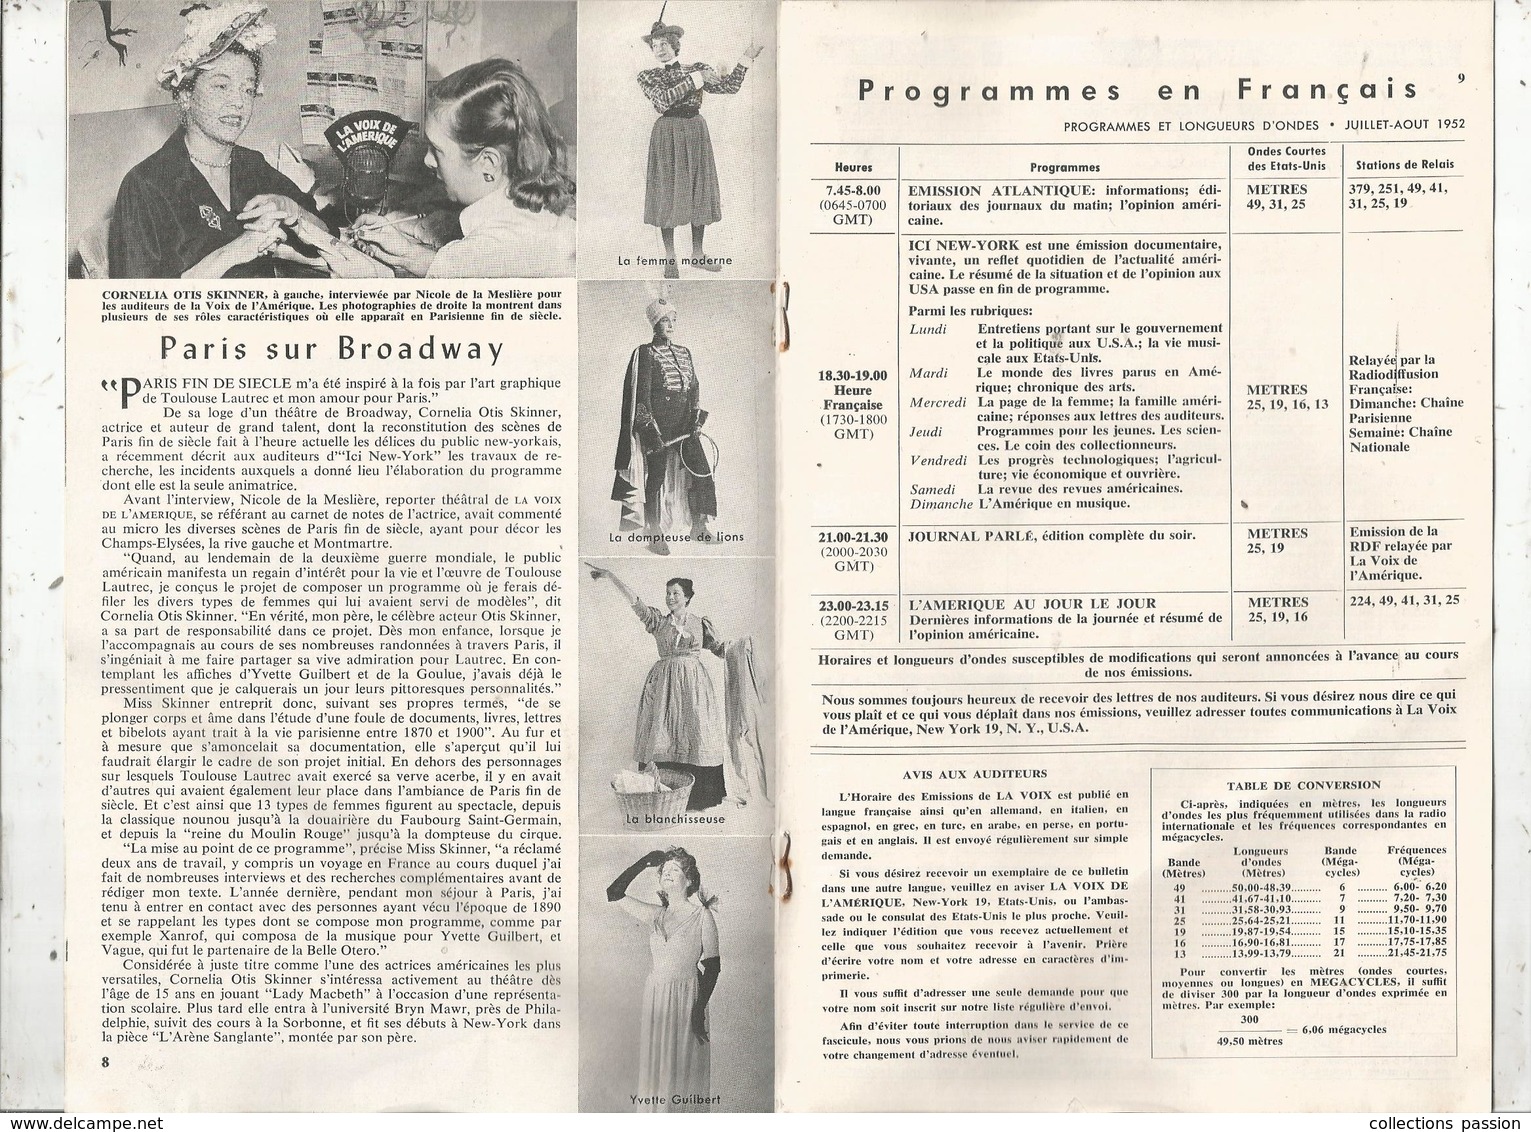 LA VOIX DE L'AMERIQUE ,1952 ,4 Scans ,programmes En Français,15 Pages , Frais Fr 1.95 E - Audio-video